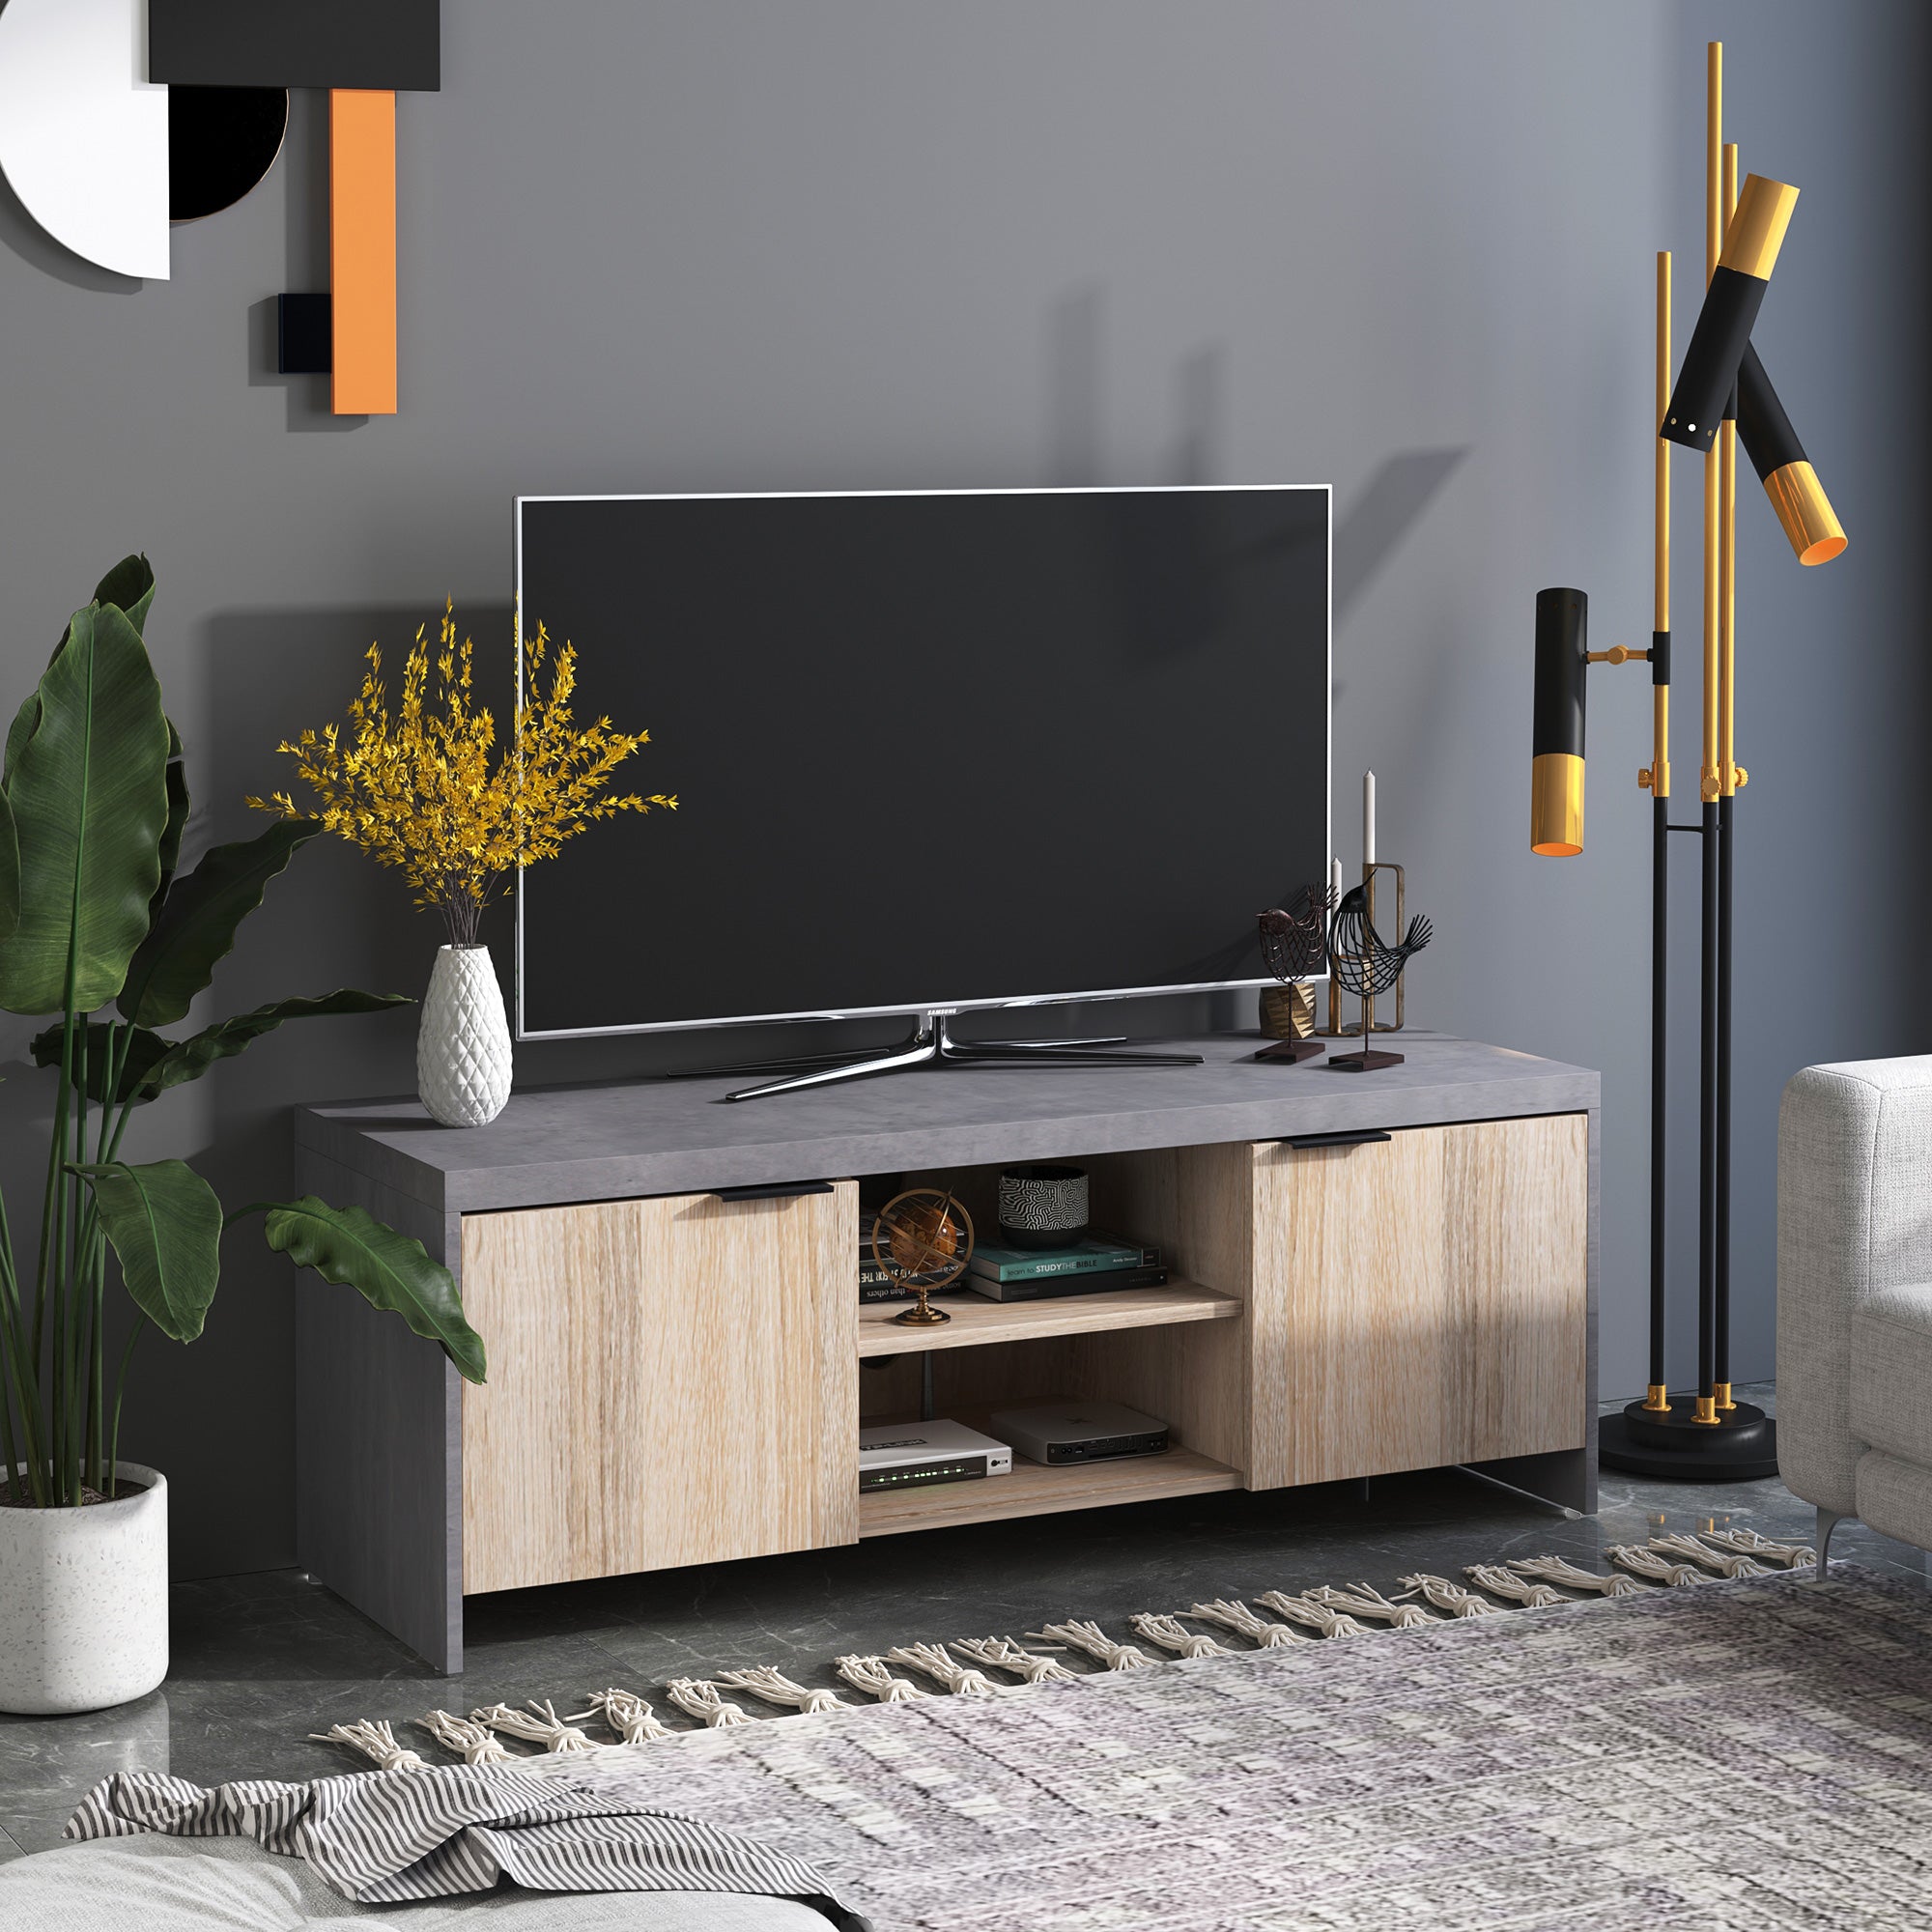 EASYCOMFORT Mobile TV in legno Moderno con Armadietti da Salotto con  Passacavi,120x40x44cm - Legno/Grigio